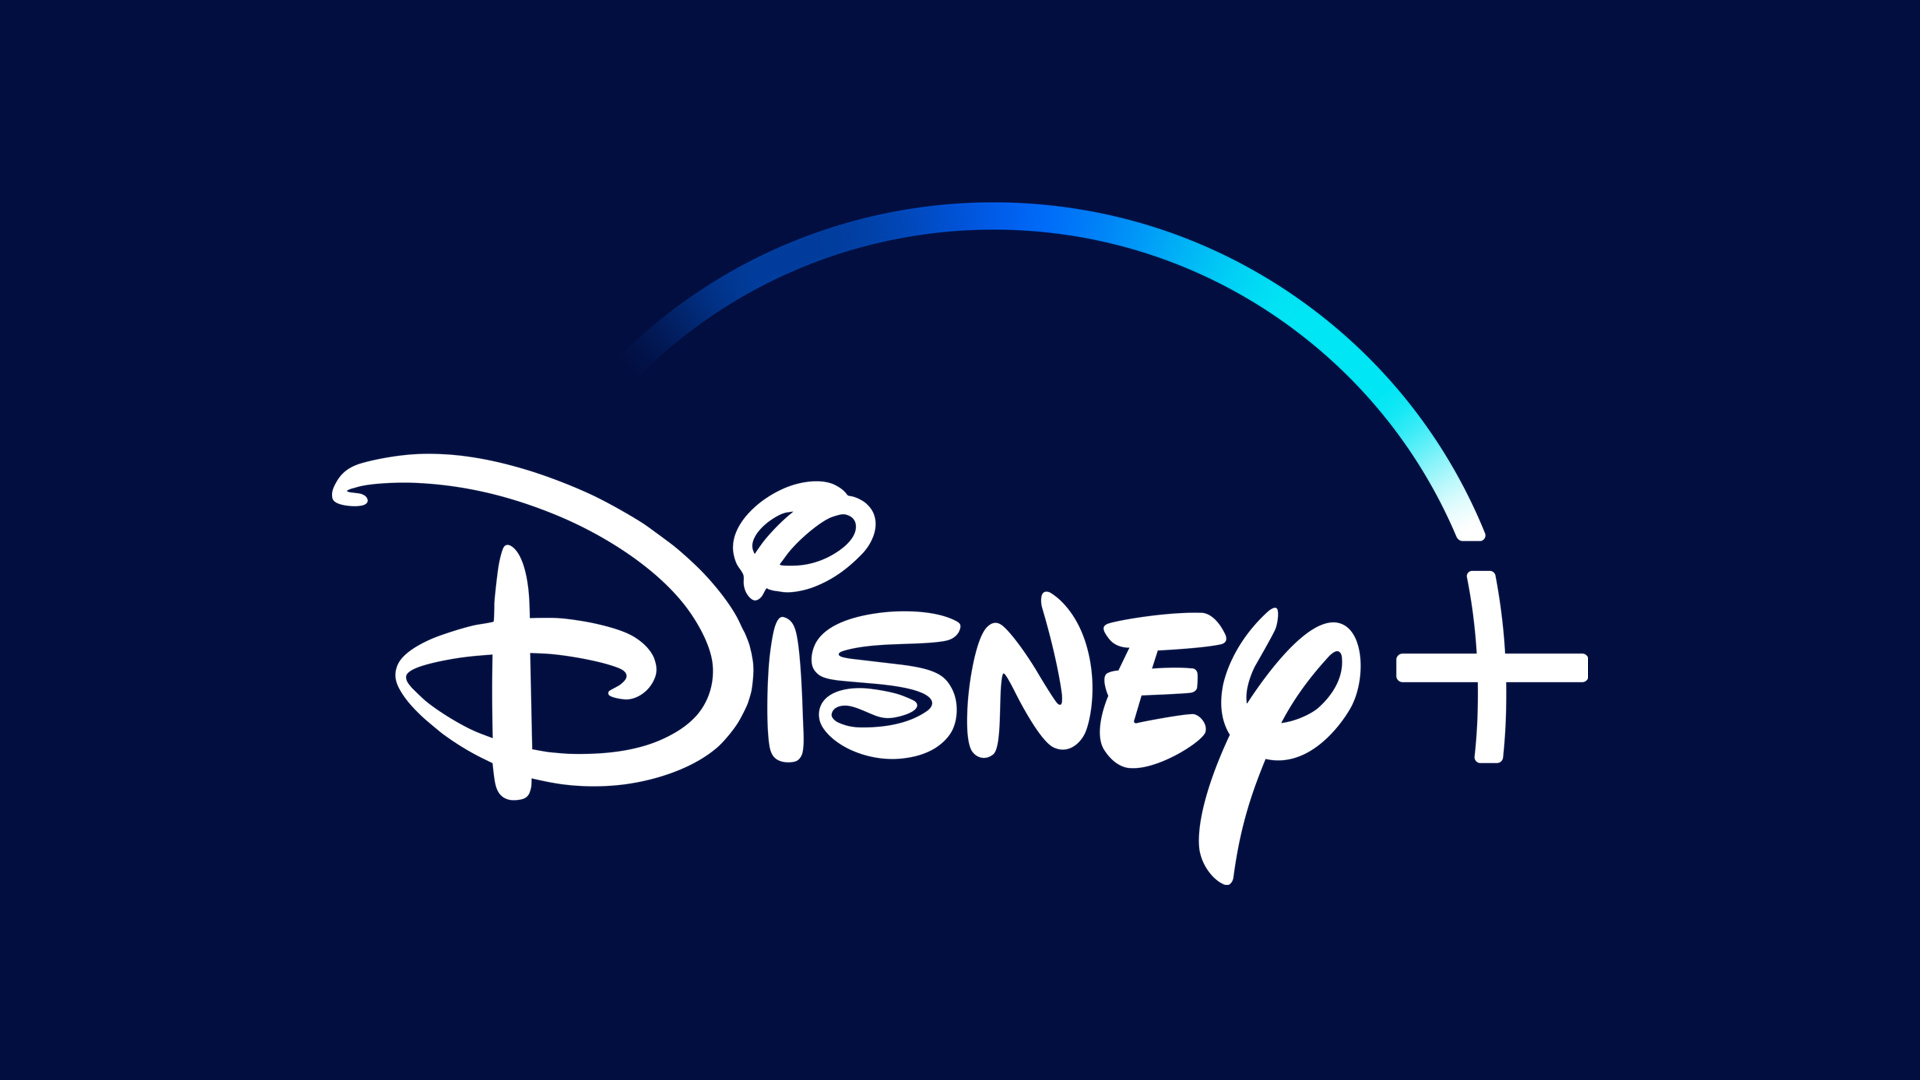 Disney+ logo courtesy of Disney Media & Entertainment Distribution